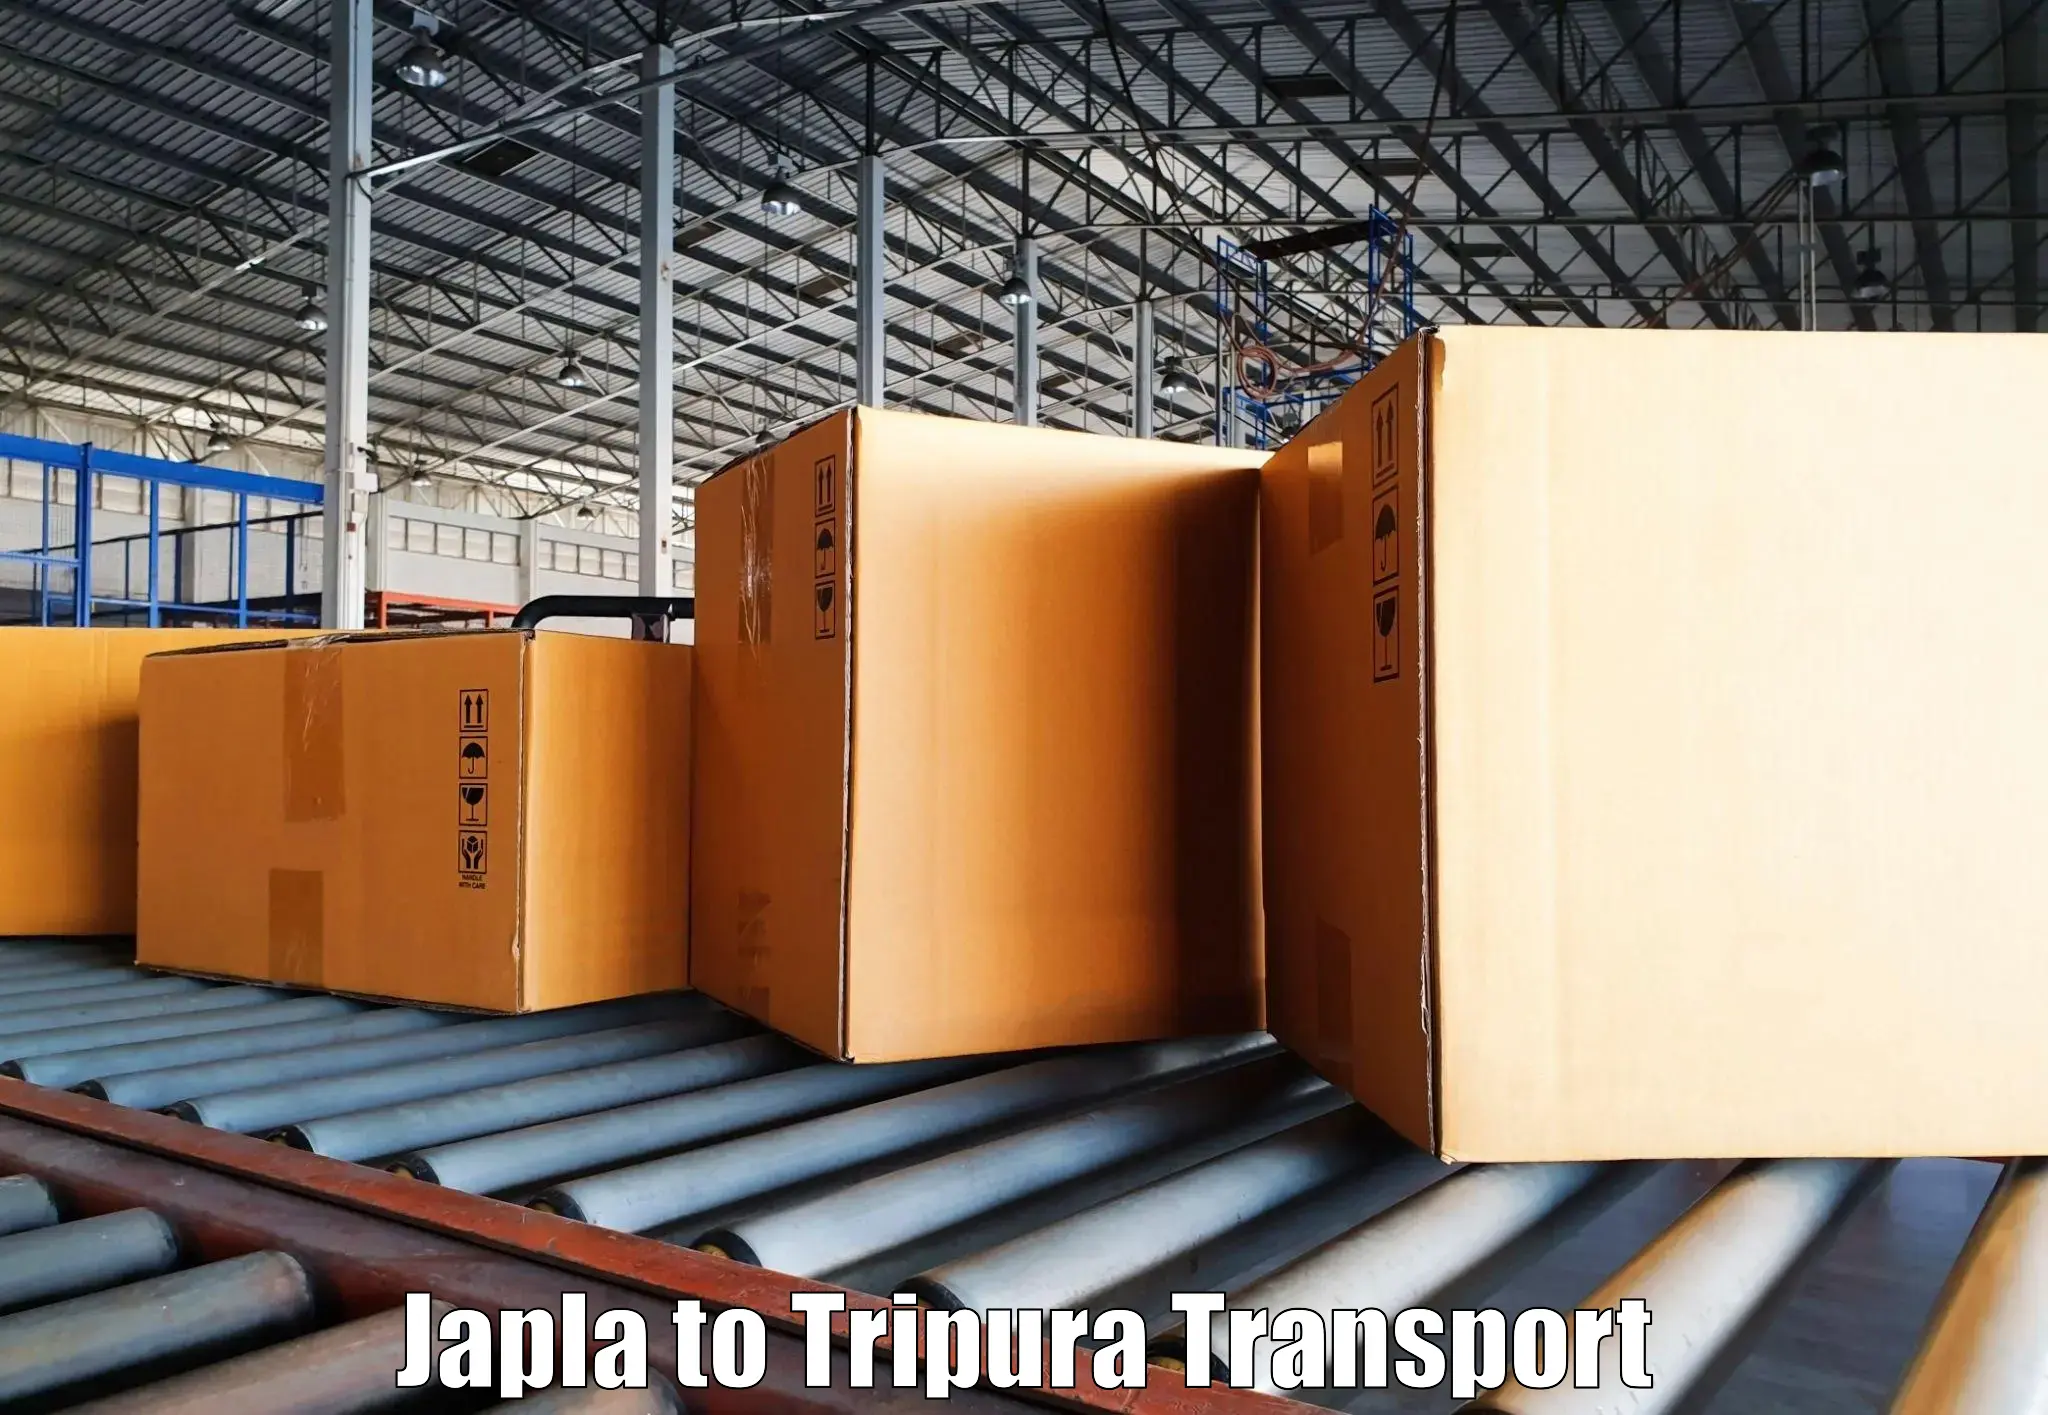 Pick up transport service Japla to Udaipur Tripura